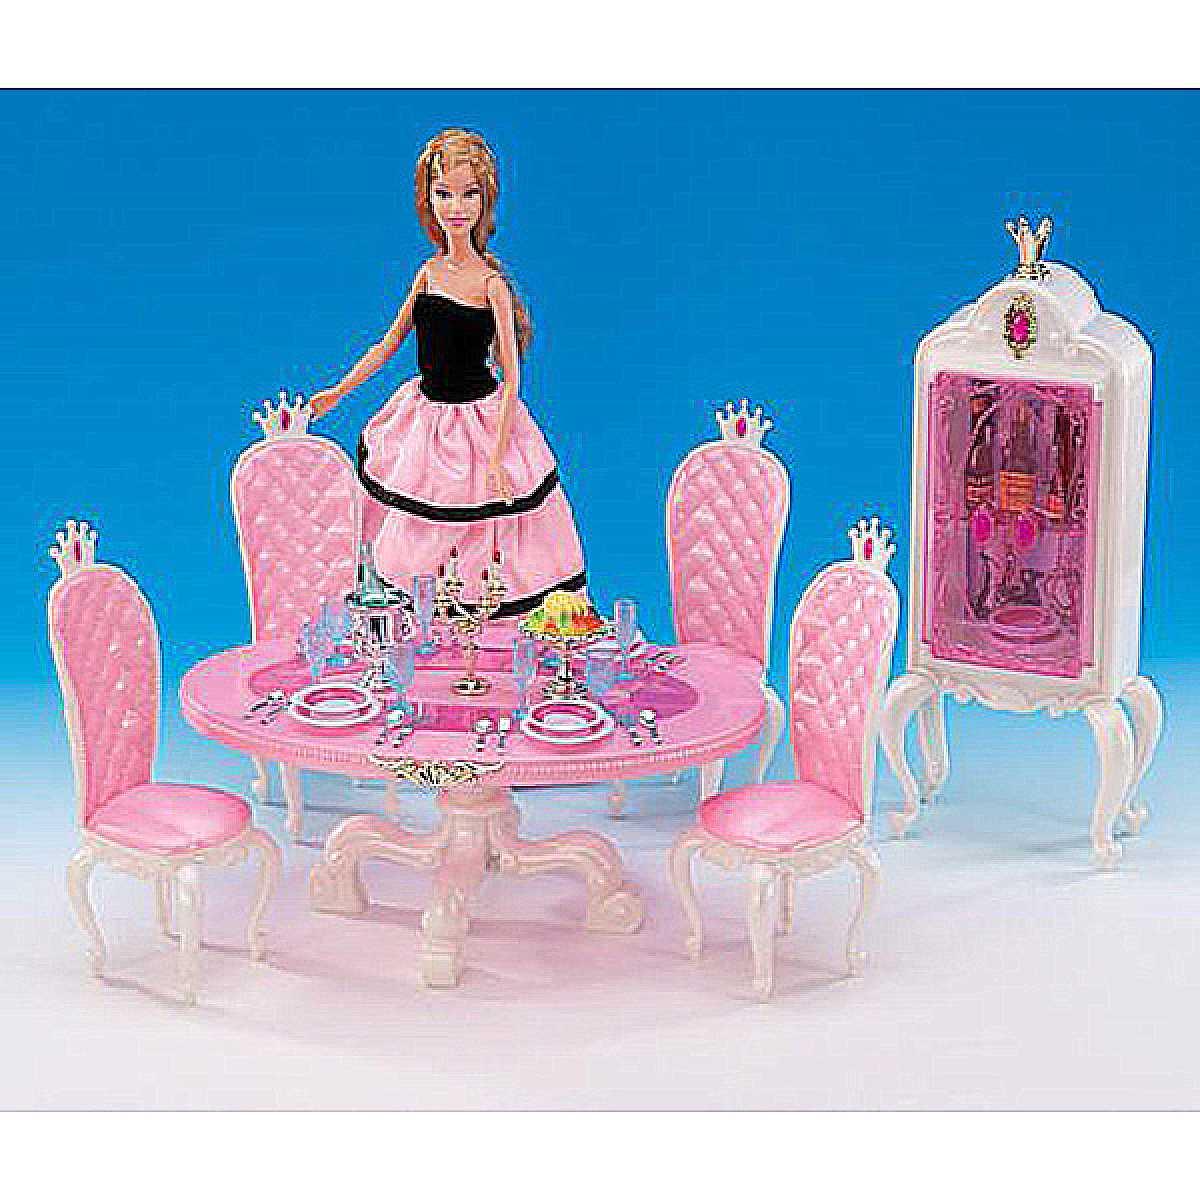 Меблі для ляльки Gloria 1212 для їдальні, стіл, 4 стільці, буфет, свічки, посуд, їжа, в коробці 30*19.5*7.5